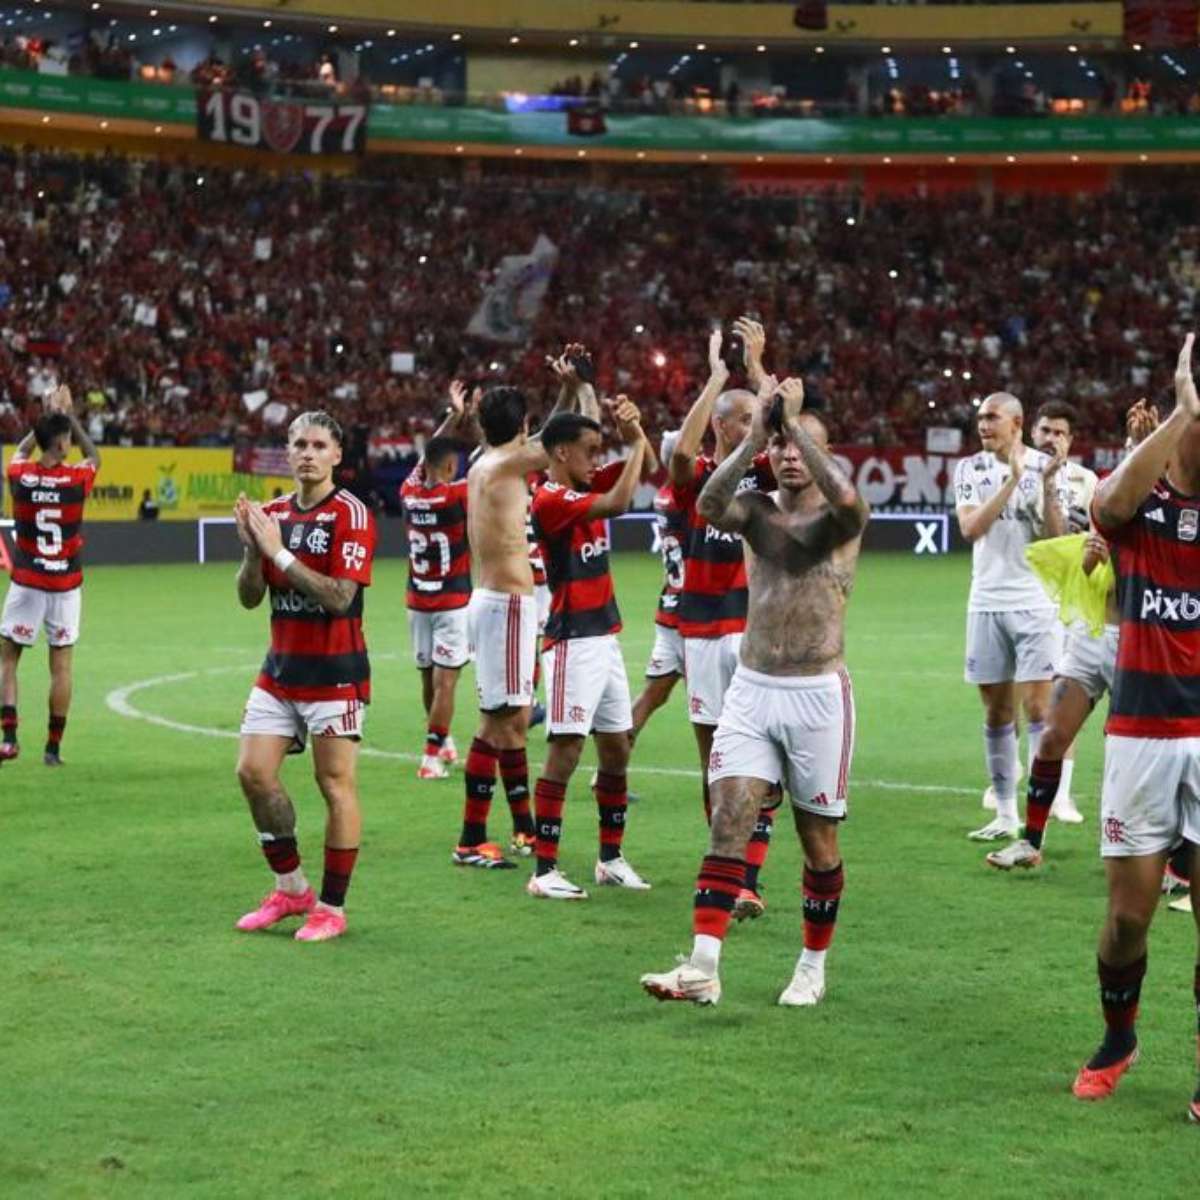 Vitória em amistoso, estreia de De la Cruz e empate no Carioca